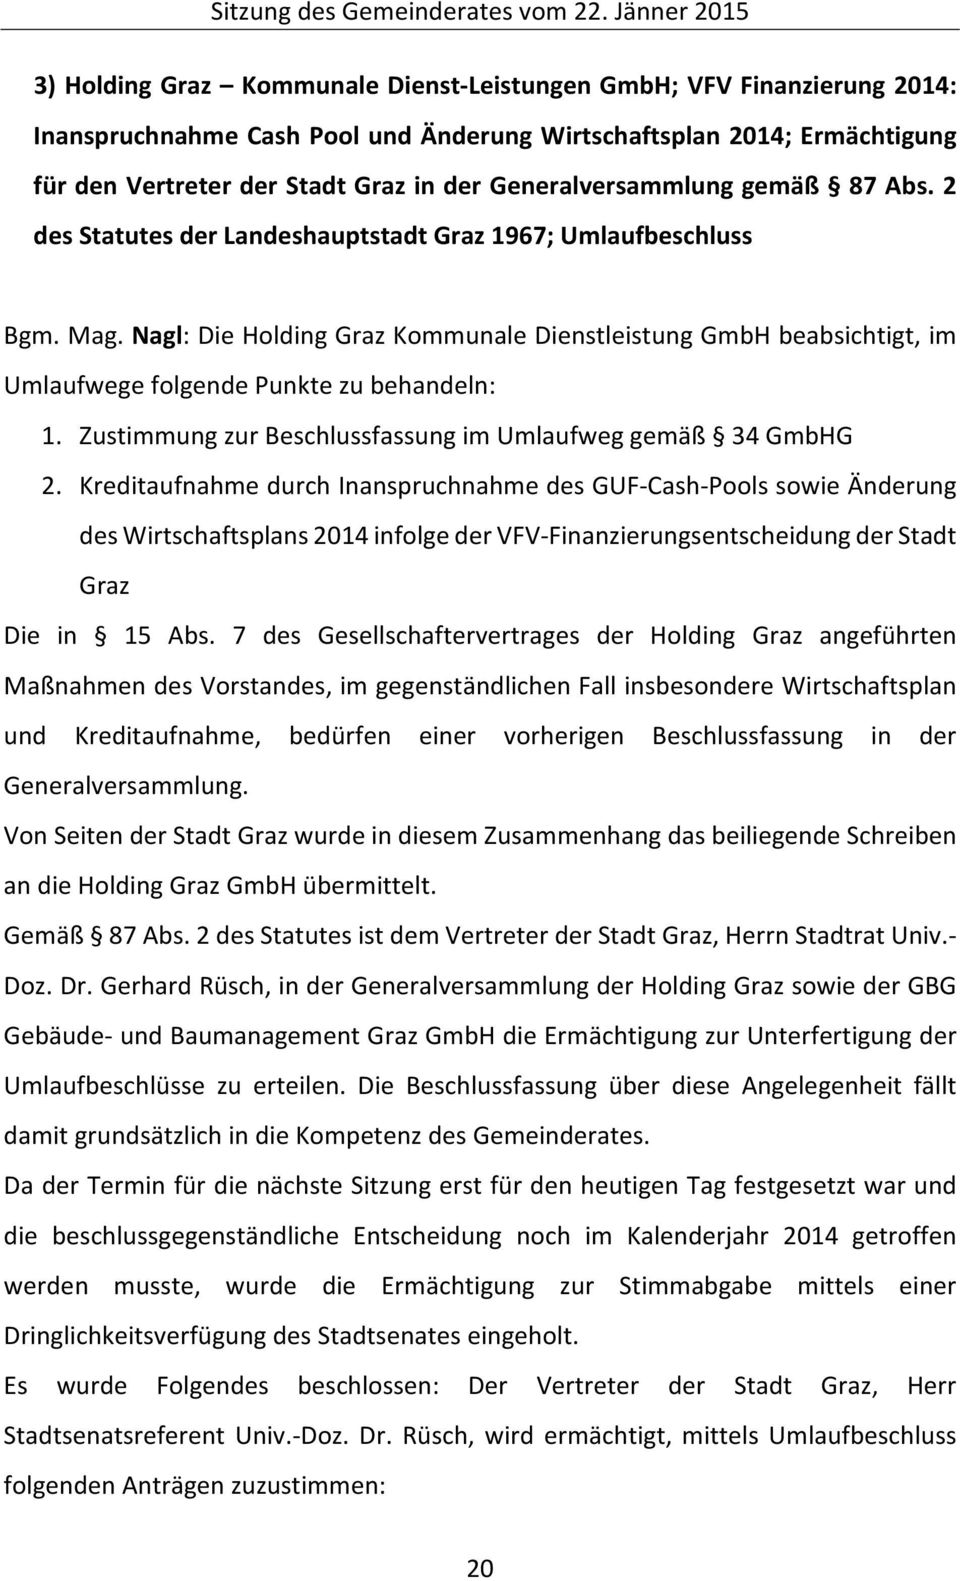 Nagl: Die Holding Graz Kommunale Dienstleistung GmbH beabsichtigt, im Umlaufwege folgende Punkte zu behandeln: 1. Zustimmung zur Beschlussfassung im Umlaufweg gemäß 34 GmbHG 2.